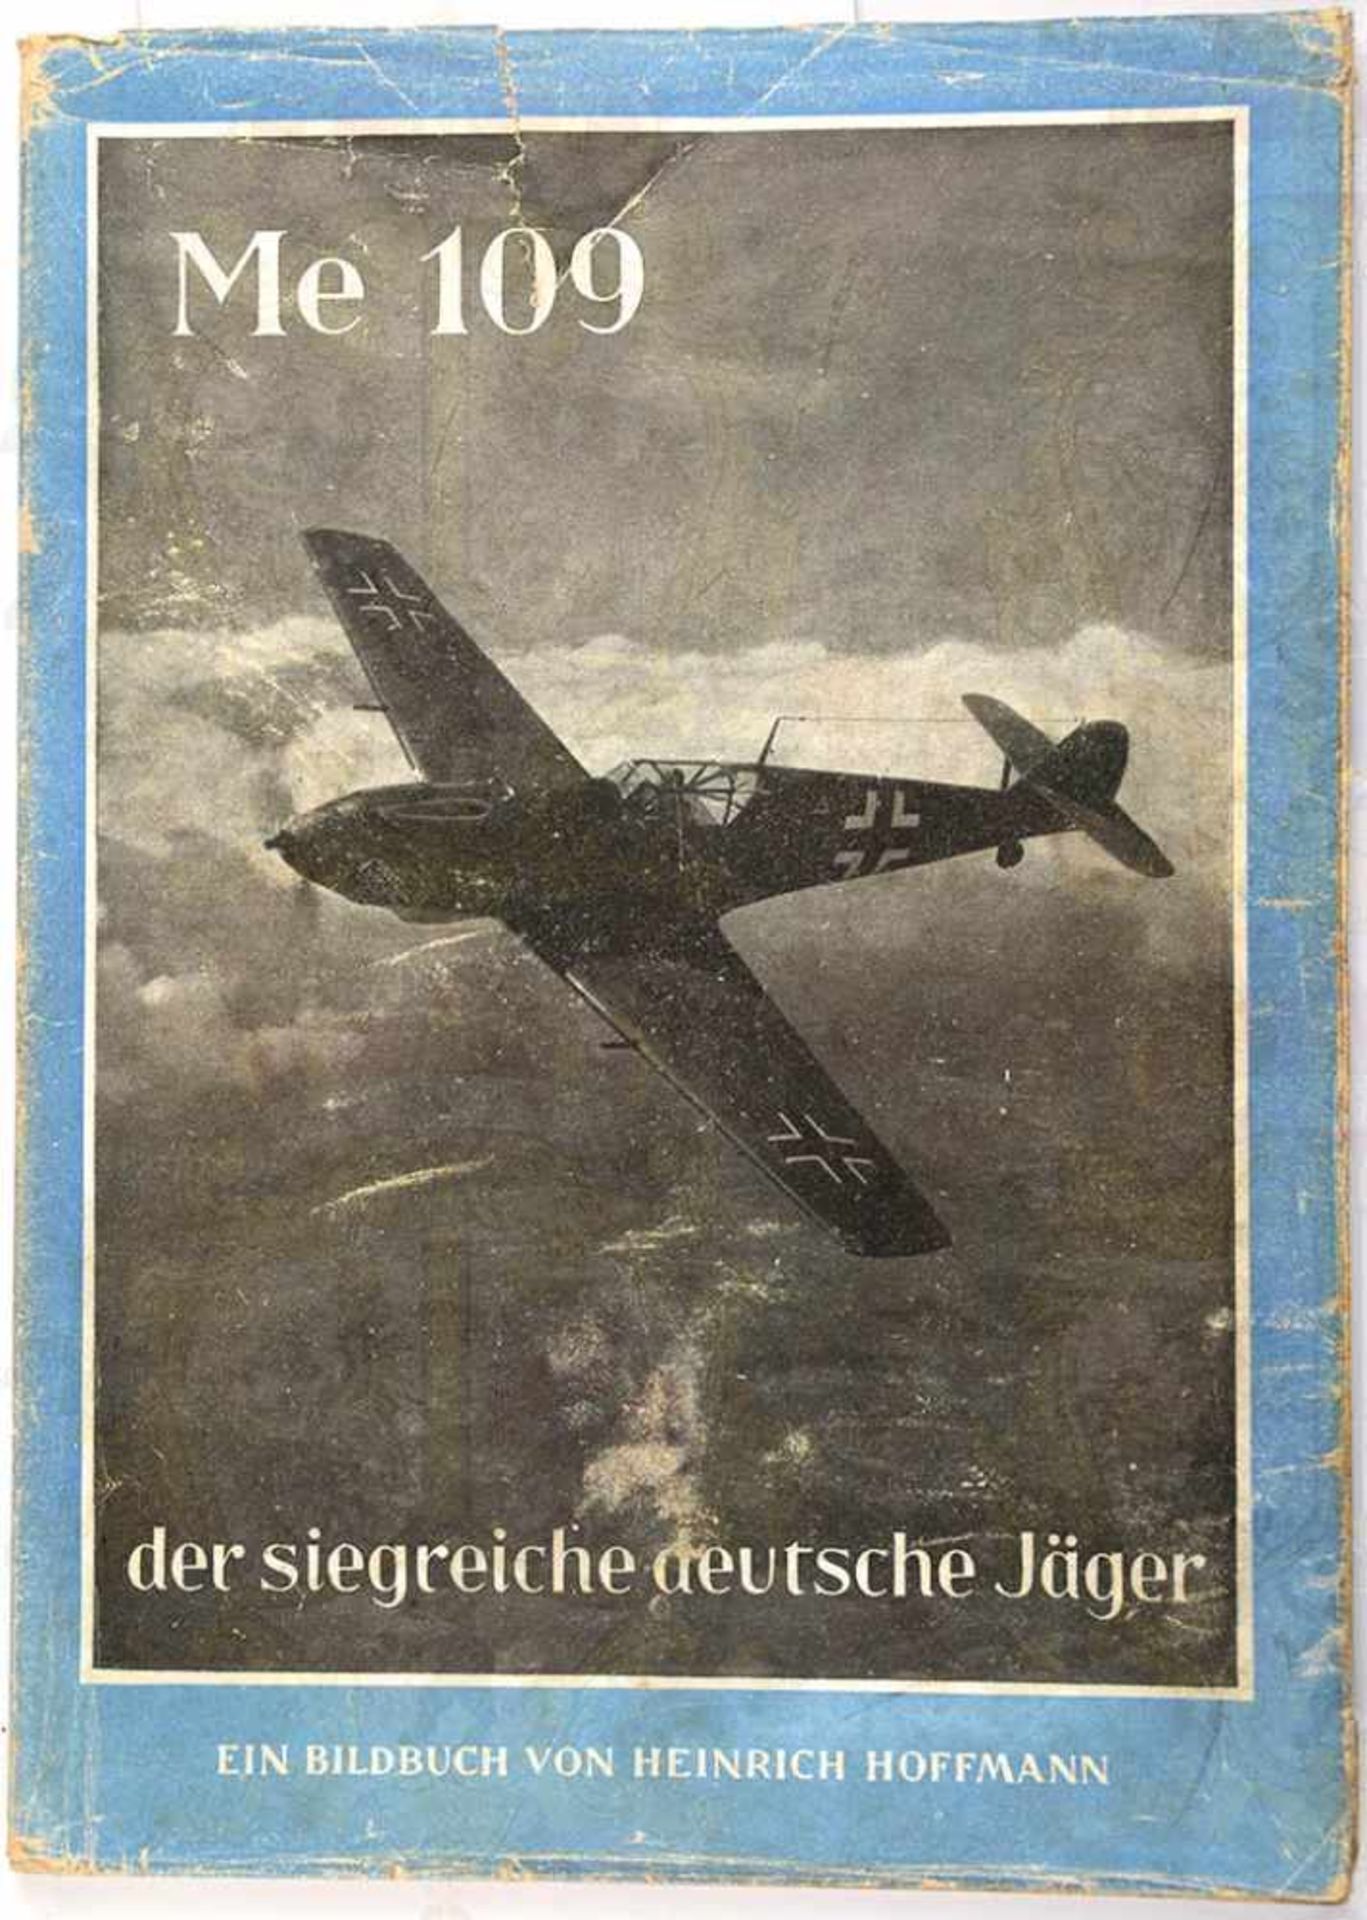 ME 109 DER SIEGREICHE DEUTSCHE JÄGER, Hoffmann-Fotoband 1941, 96 S., kart., SU m. Gebrauchsspuren